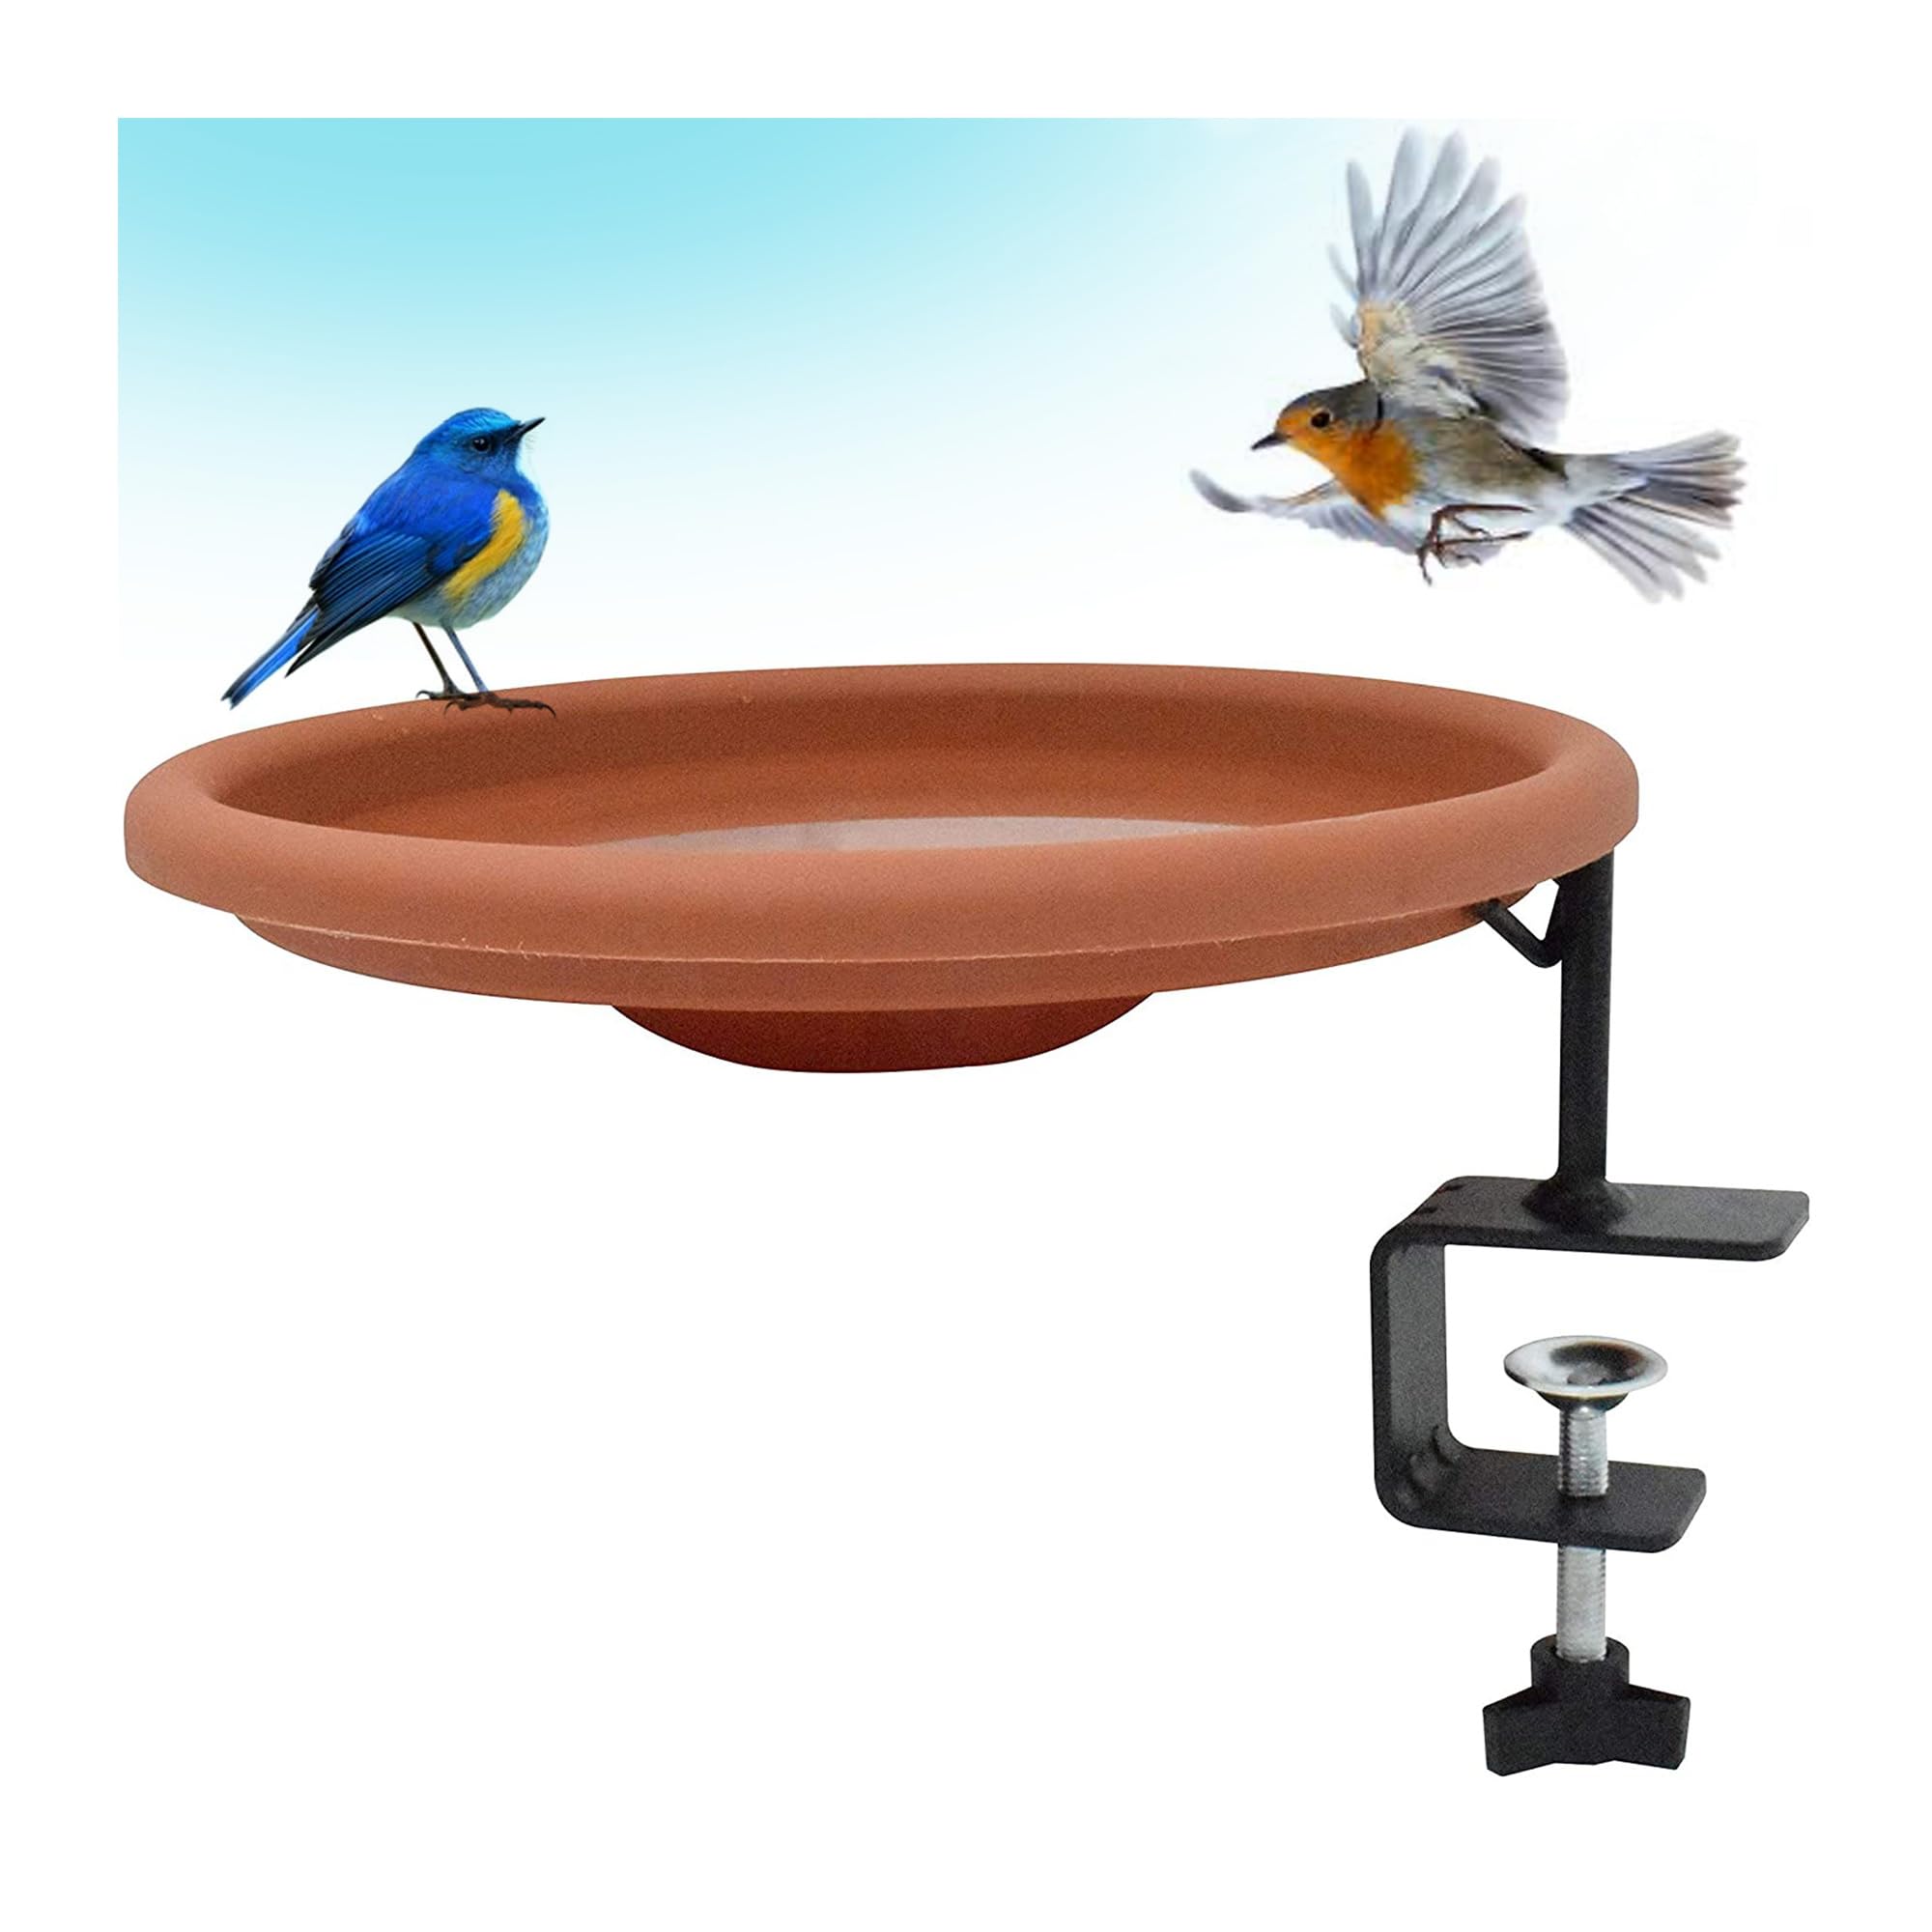 Gray Bunny Bird Bath Bowl 12 Inches - Deck Mounted Bird Water Feeder, Large Bird Bath, Bowl Bird Baths, Hanging Bird Baths, Heavy Duty Stur